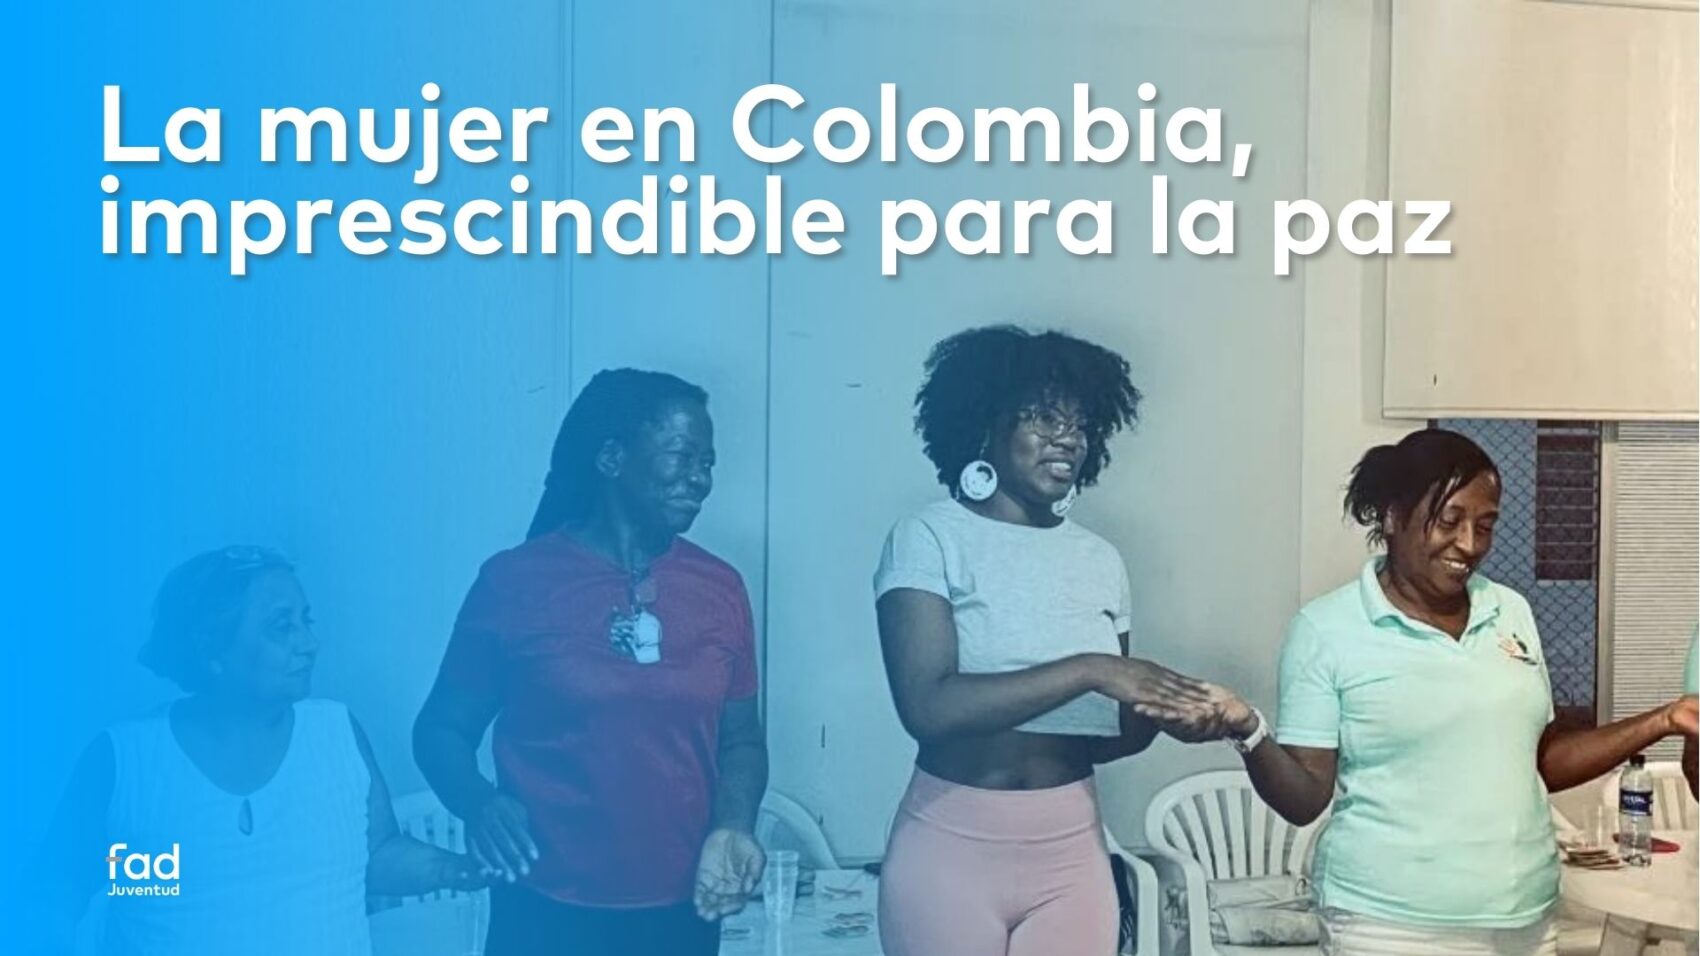 La mujer en Colombia es imprescindible para la paz